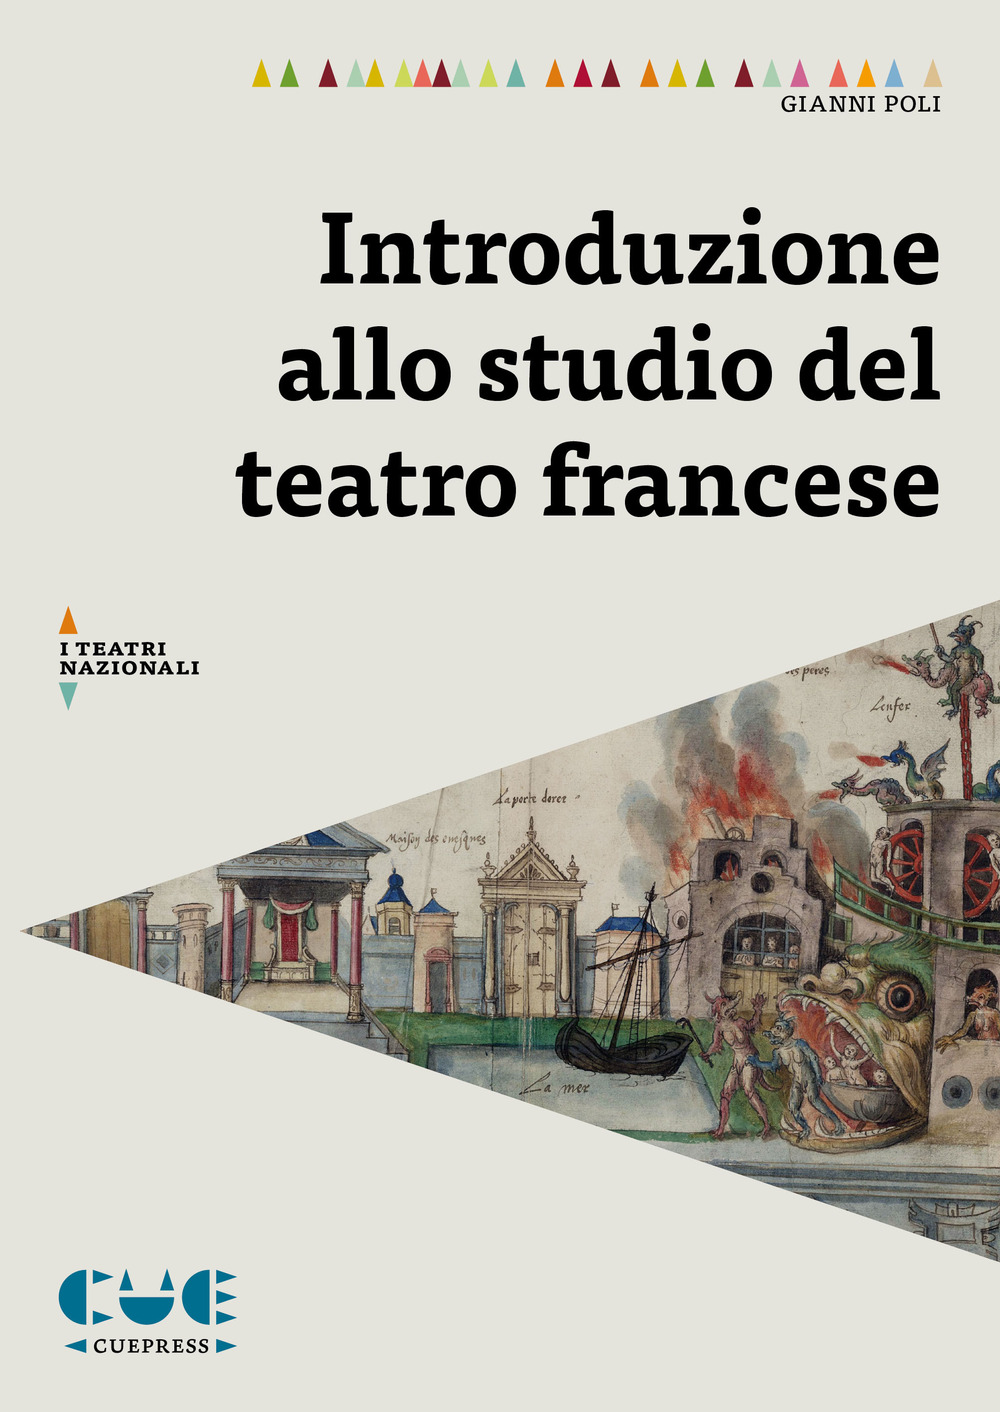 Libri Gianni Poli - Introduzione Allo Studio Del Teatro Francese NUOVO SIGILLATO, EDIZIONE DEL 28/02/2020 SUBITO DISPONIBILE